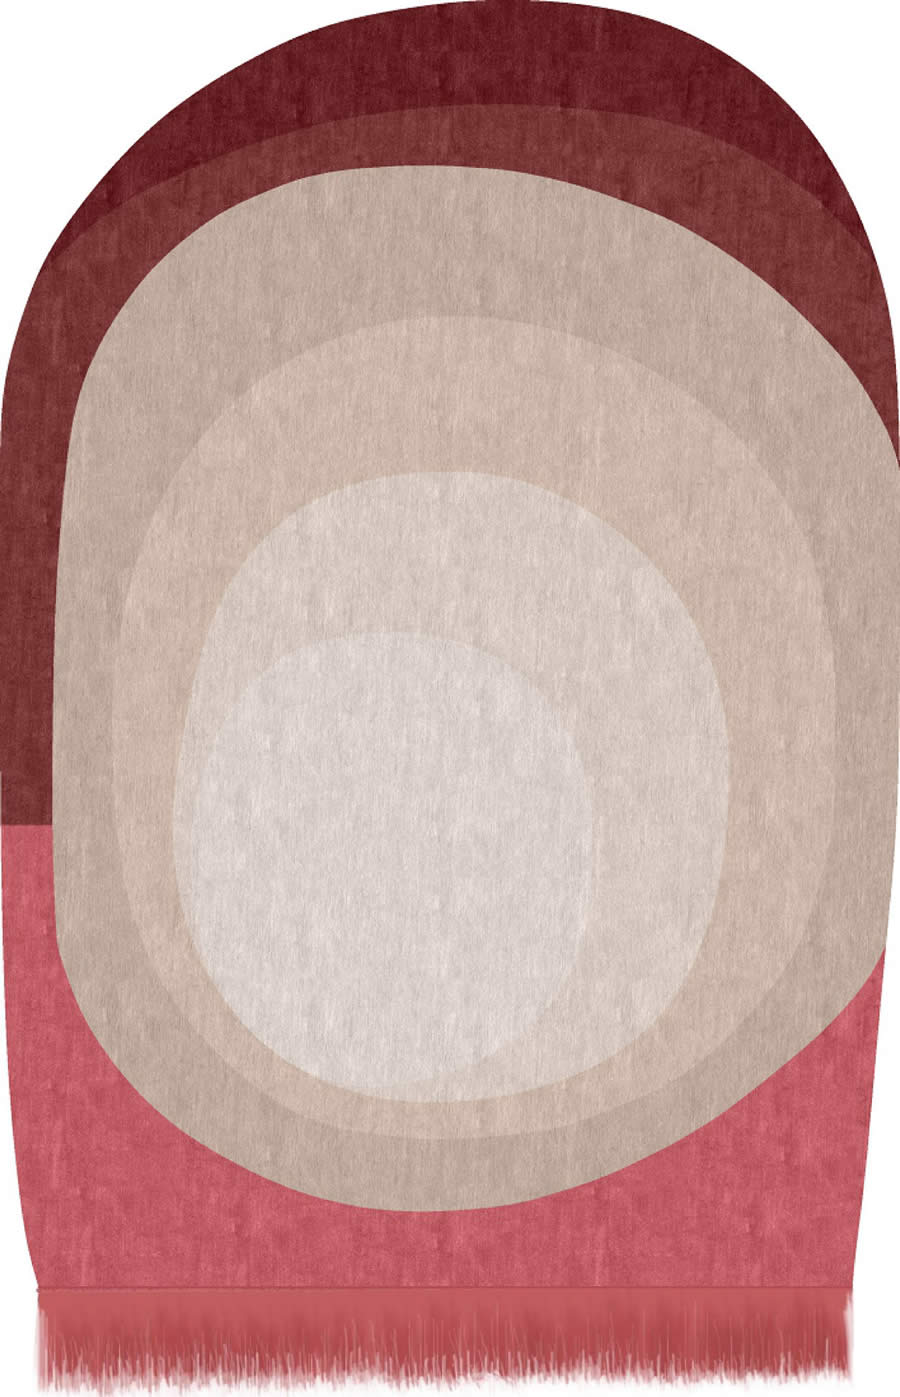 现代创意红粉色不规则纹理图案地毯贴图